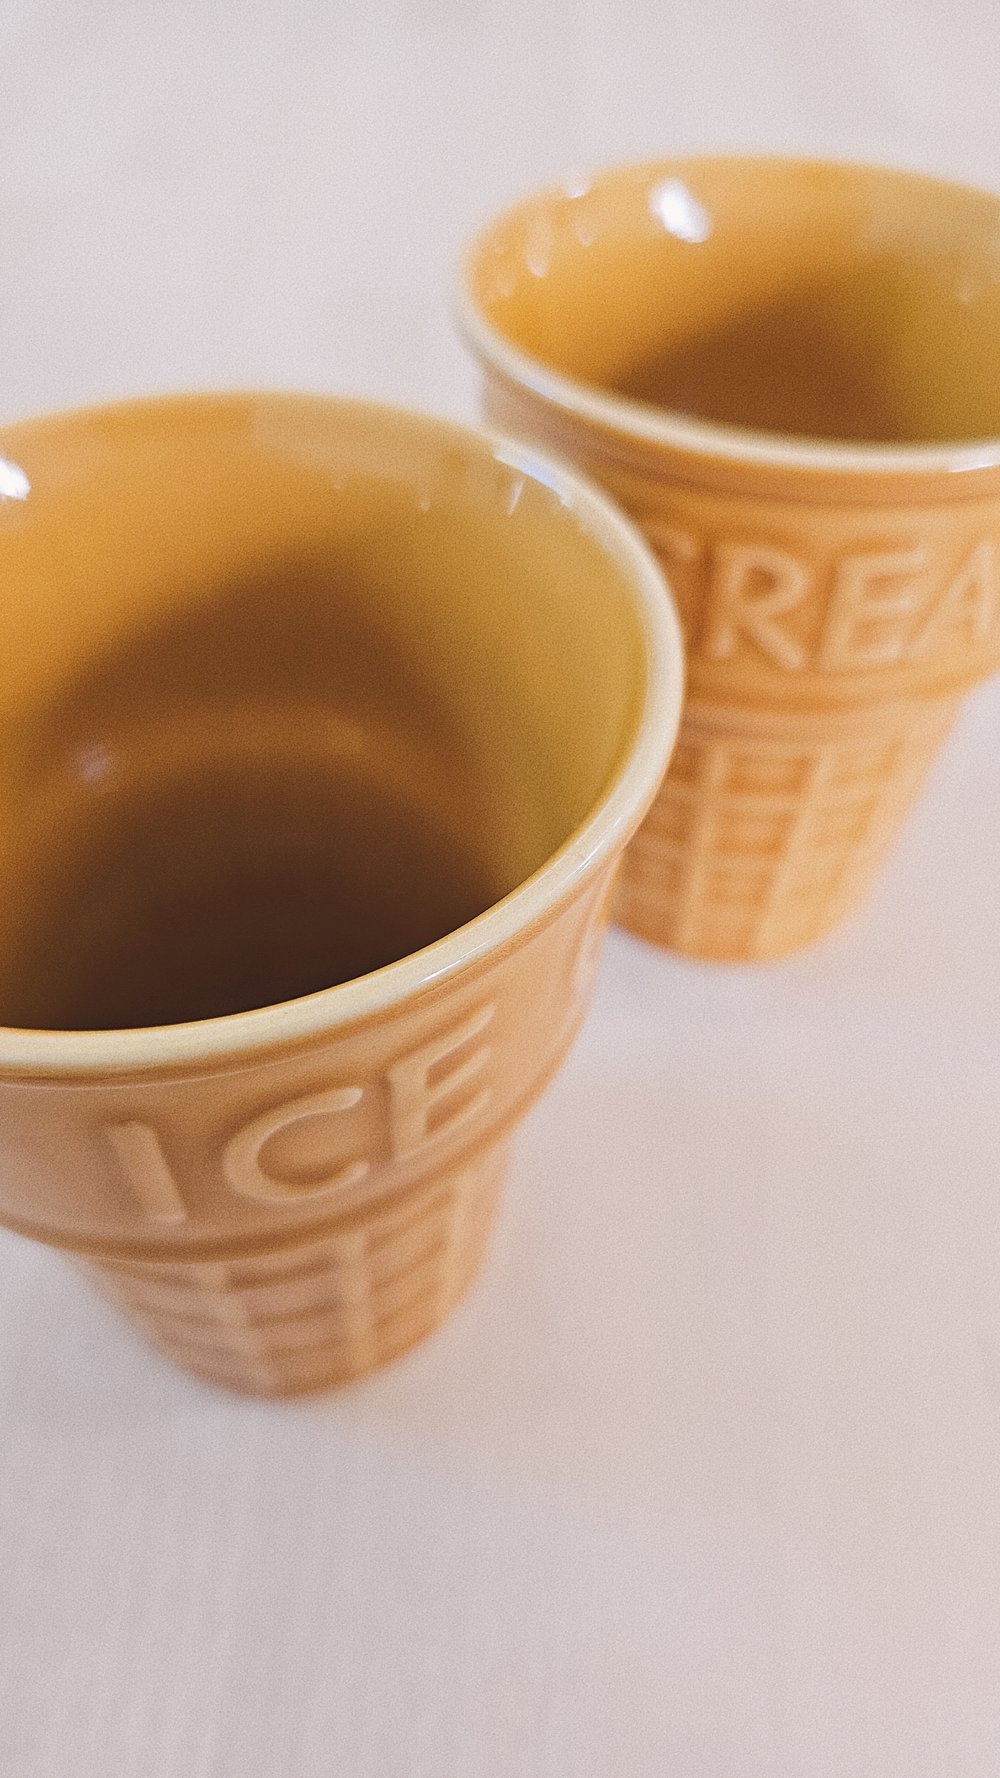 Ice cream cone ceramic cups